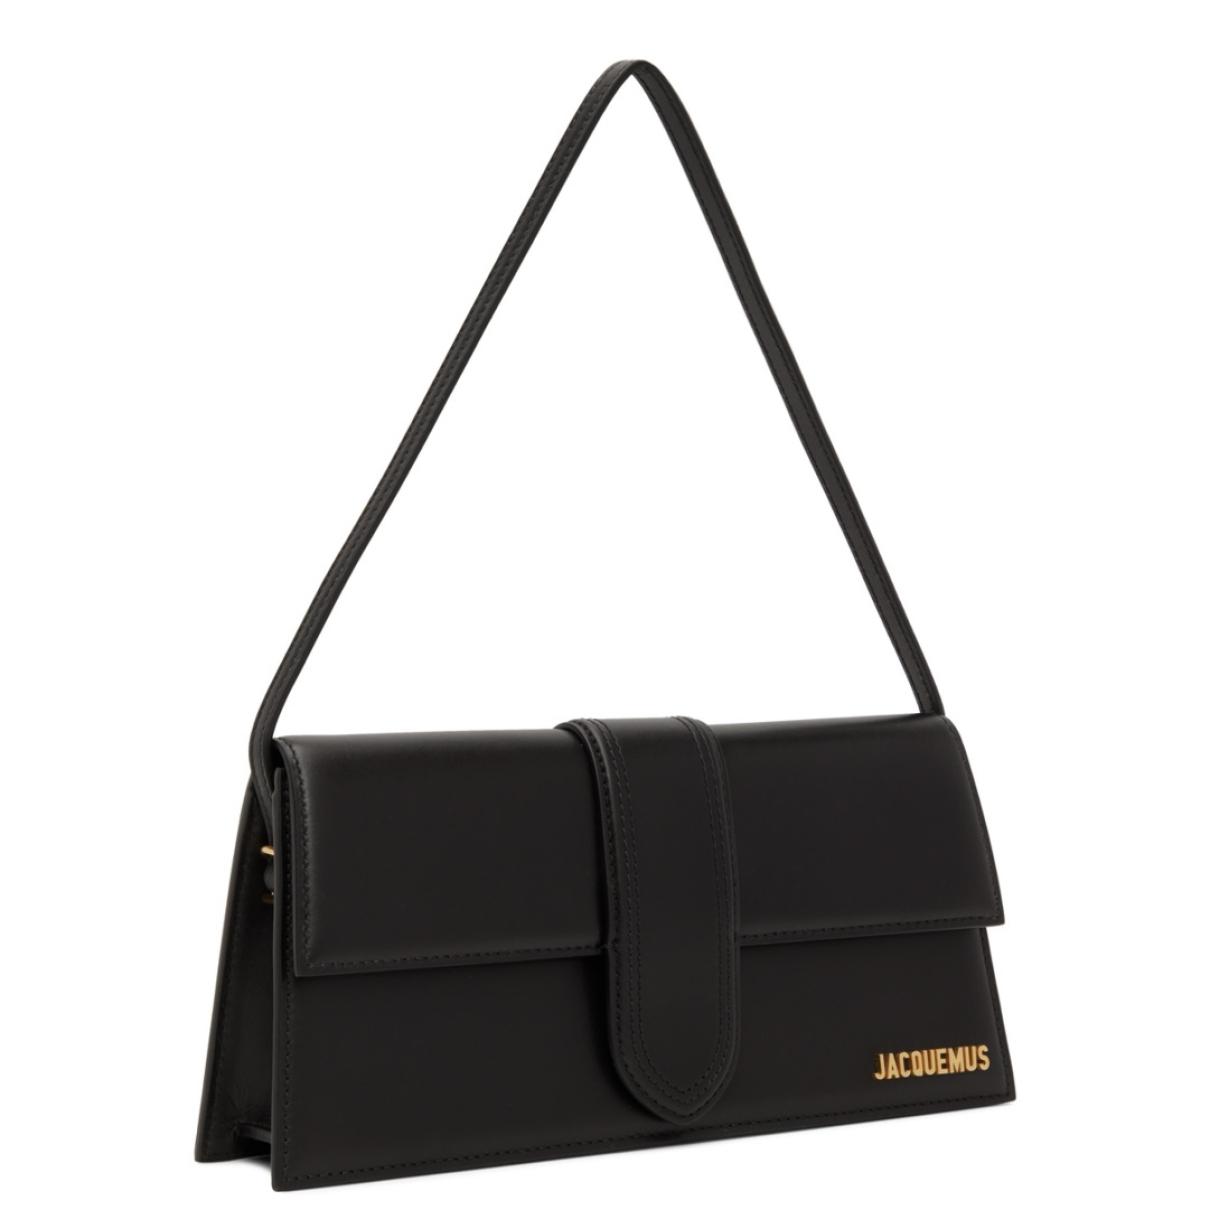 Le Bambino leather handbag - 2